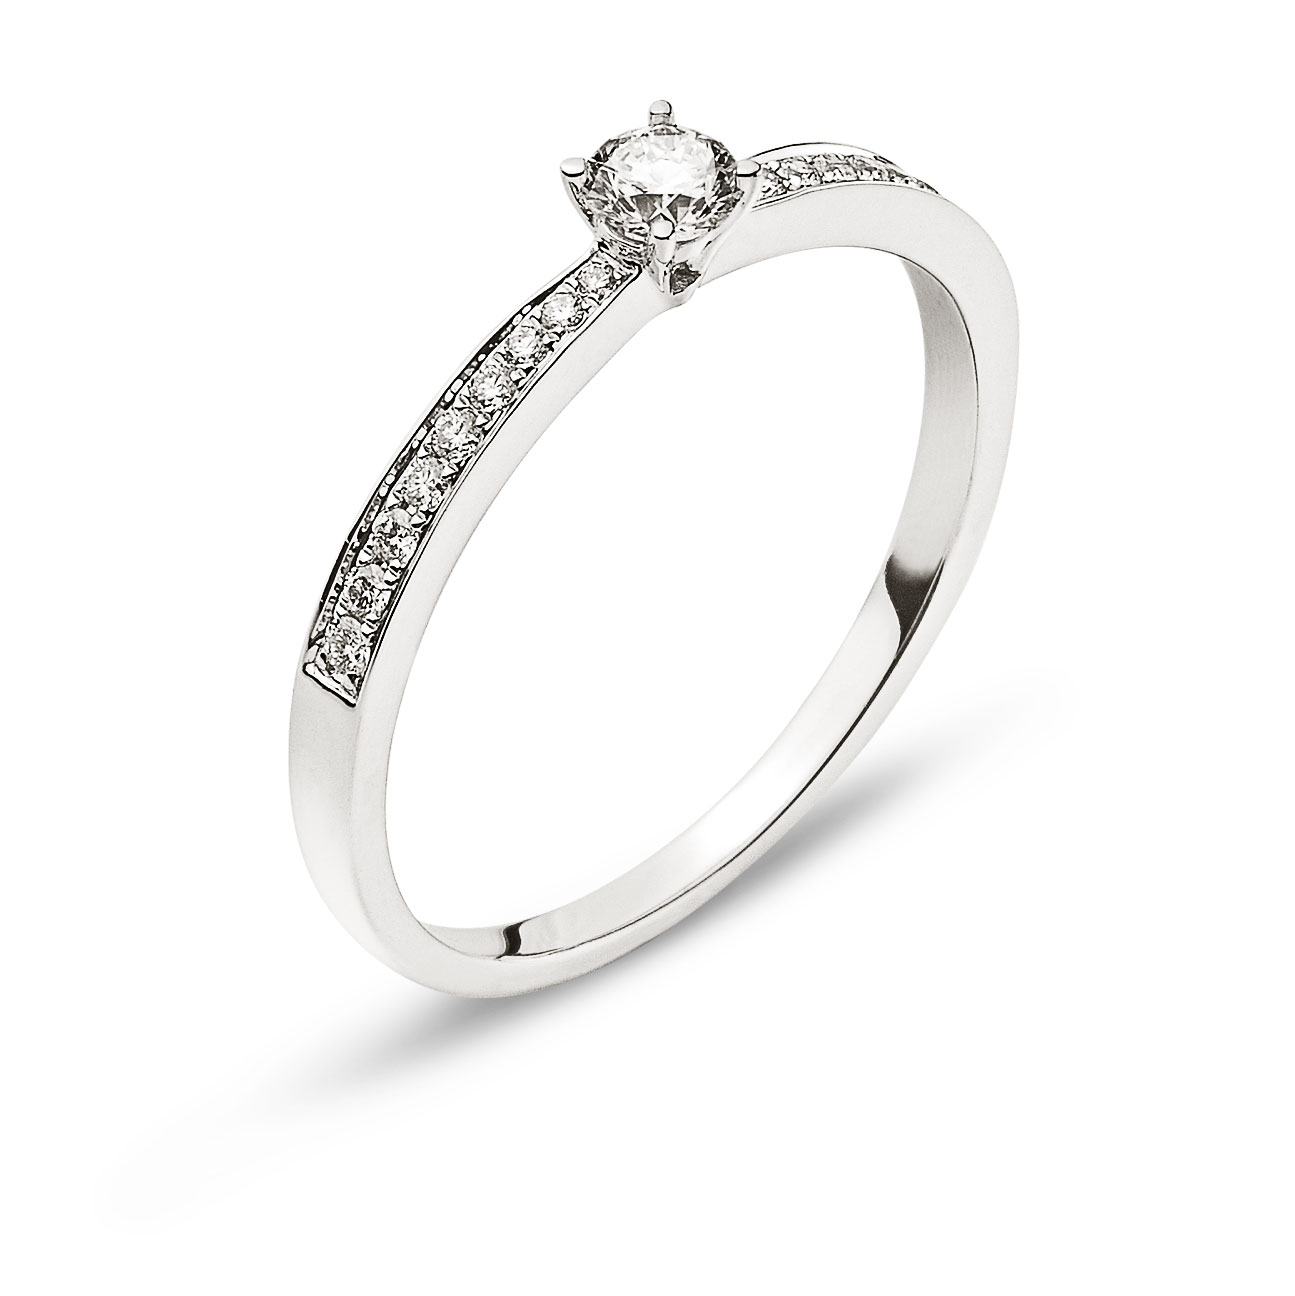 AURONOS Prestige Ring Weissgold 18K Diamanten 0.24ct